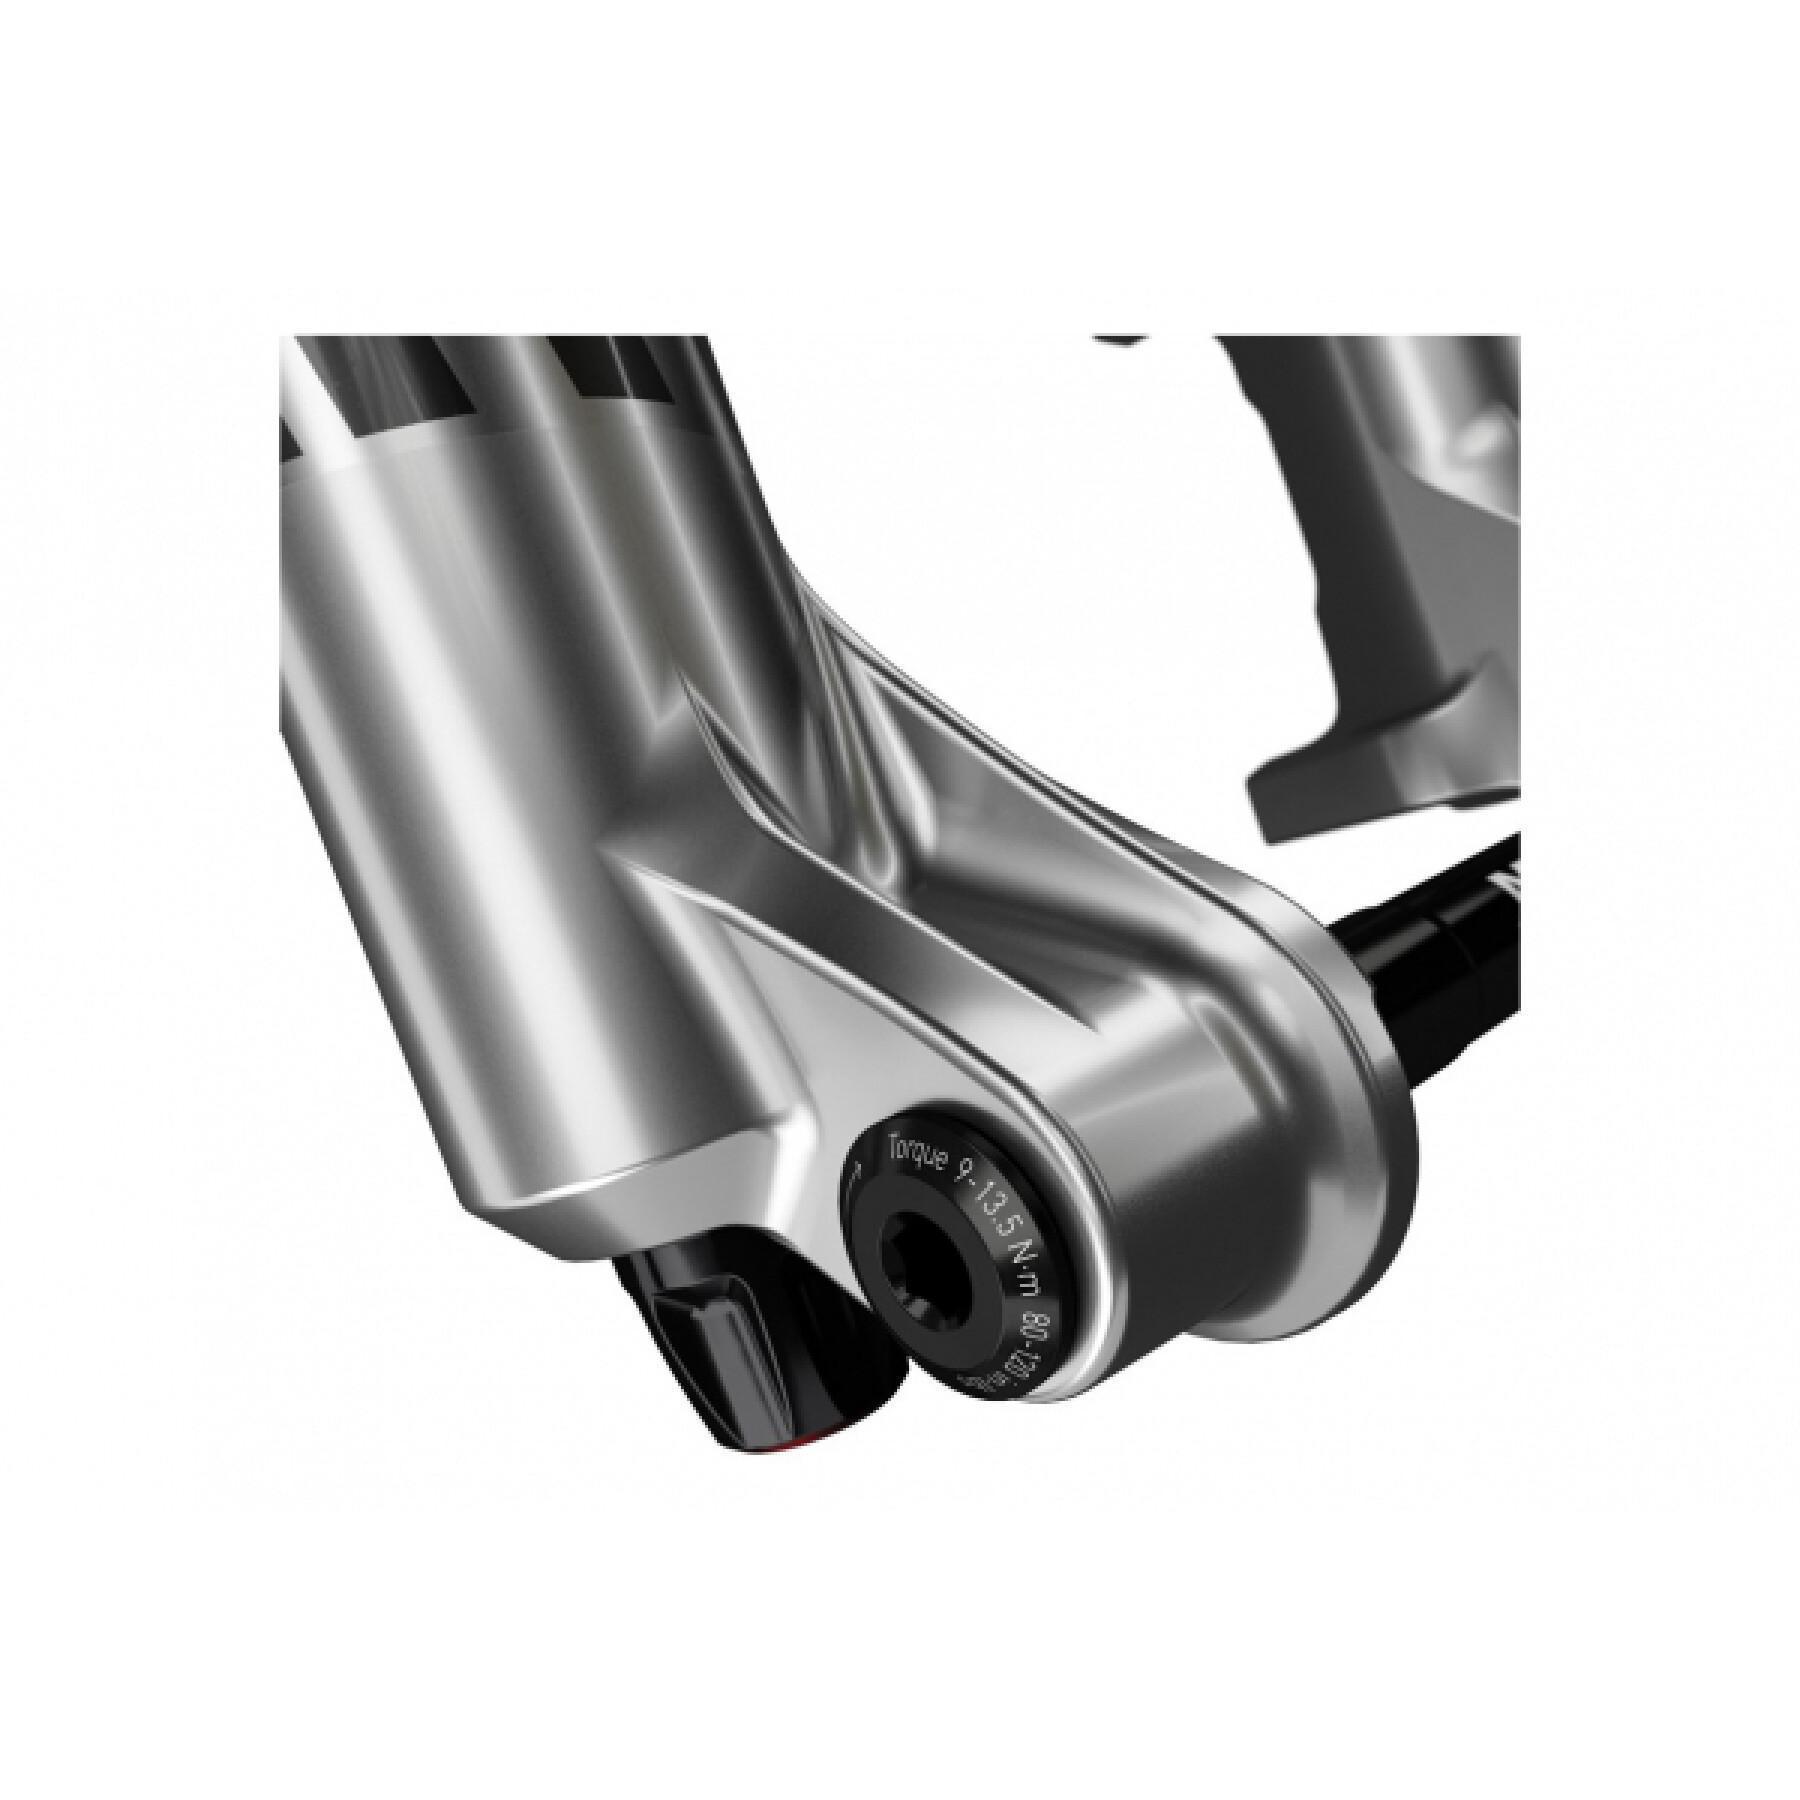 Fourche à suspension en aluminium conique Rockshox Lyric Ultimate Charger 2.1 RC2 Boost 51 Offs 29"